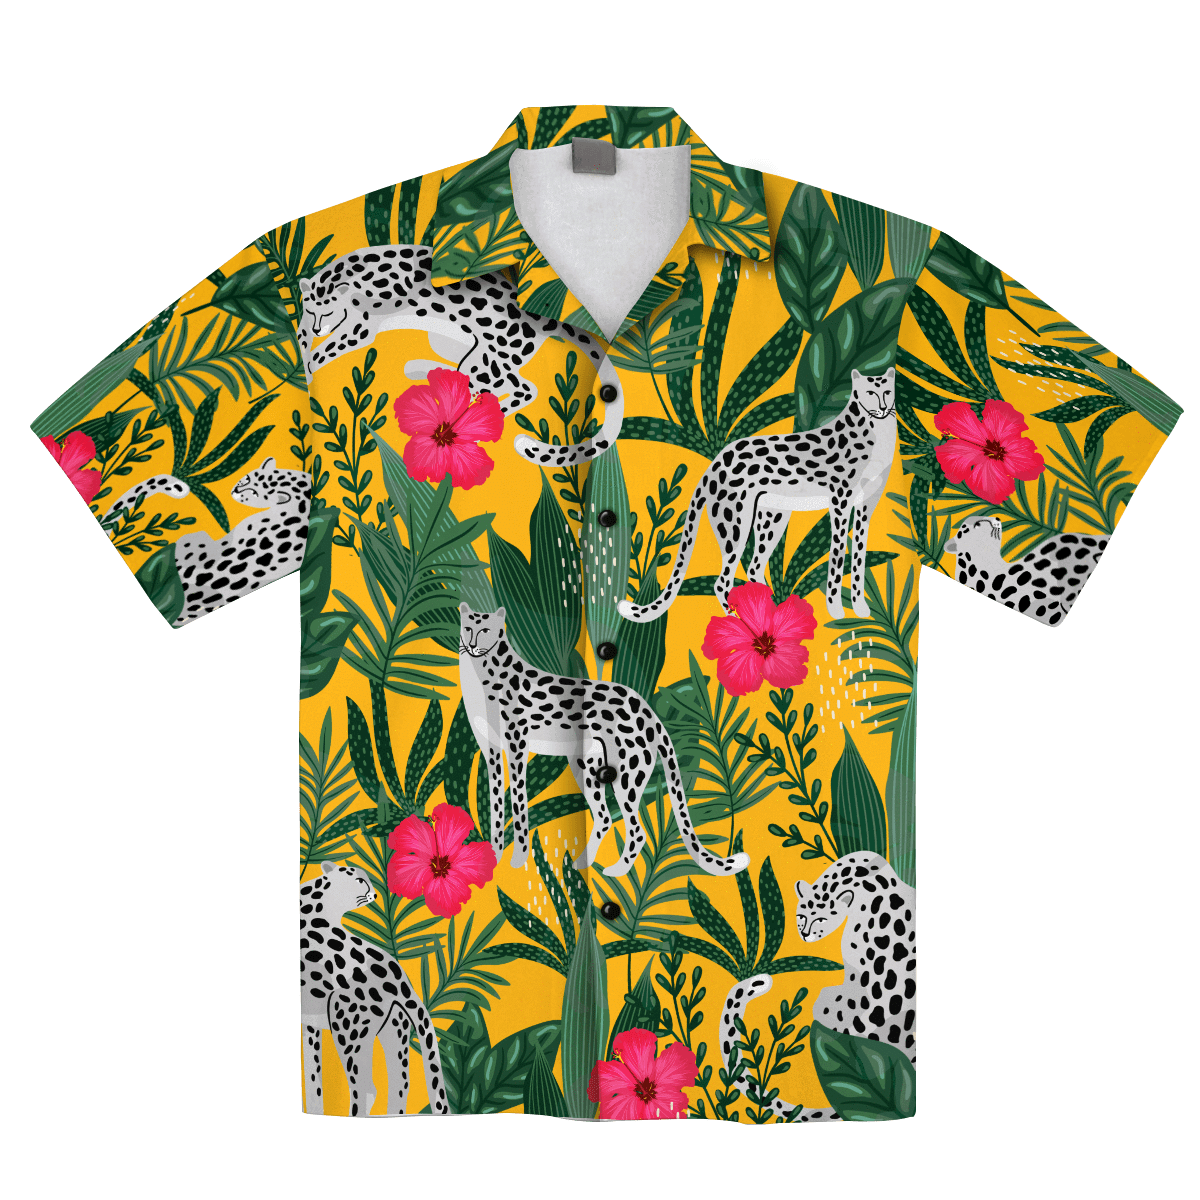 Africanfloral Leopard Pattern Flowers Tropical Hawaiian Aloha Shirt For Men Women – Hothot